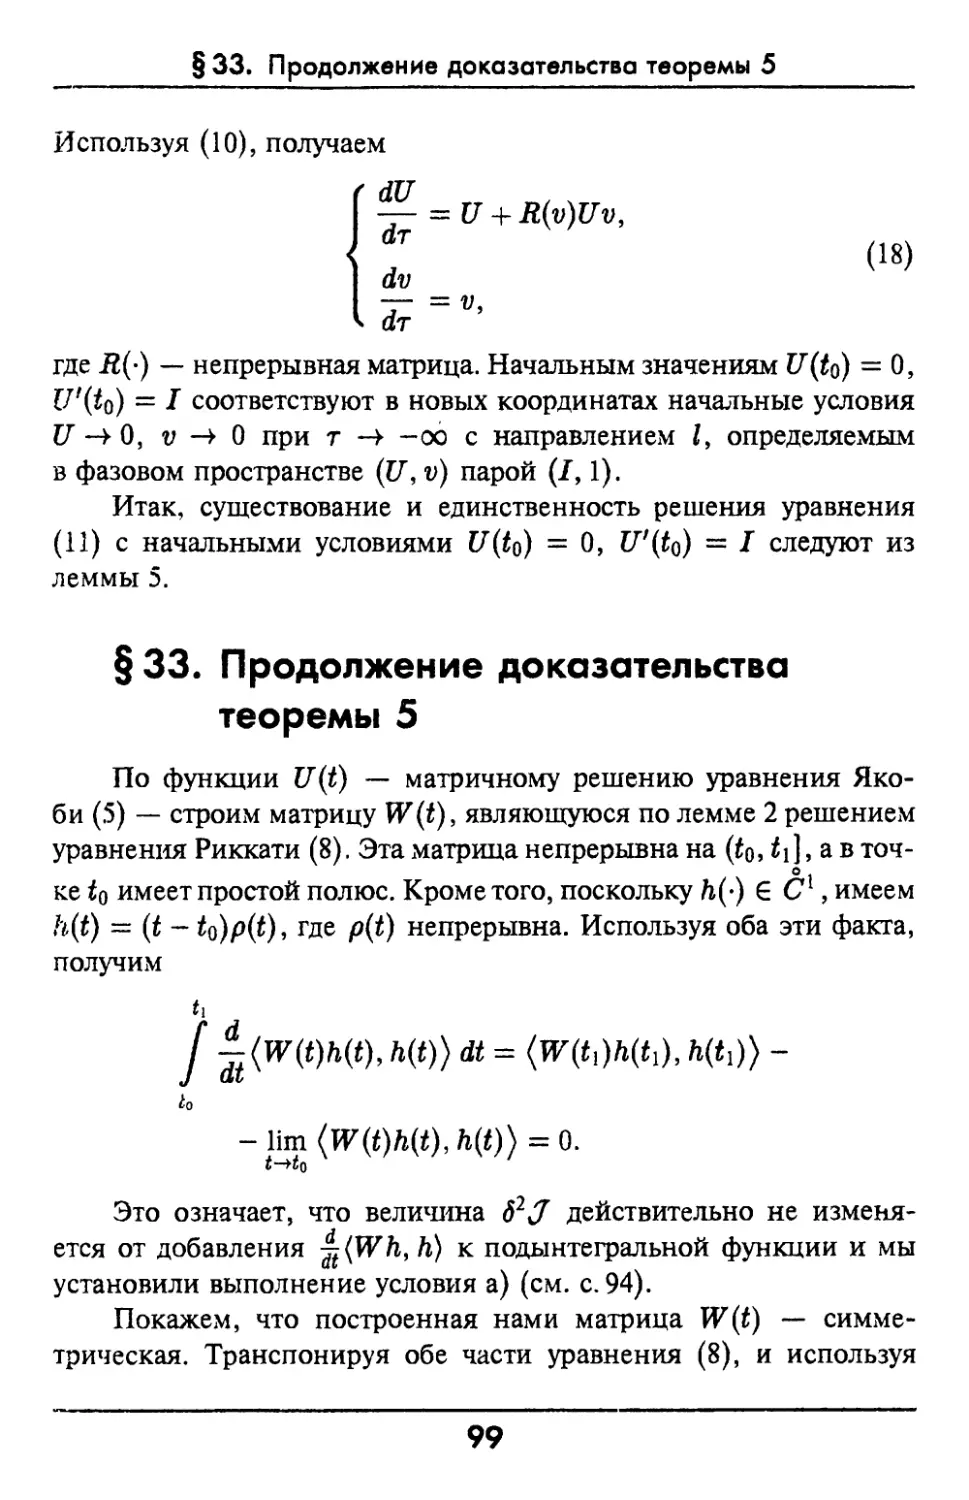 §33. Продолжение доказательства теоремы 5